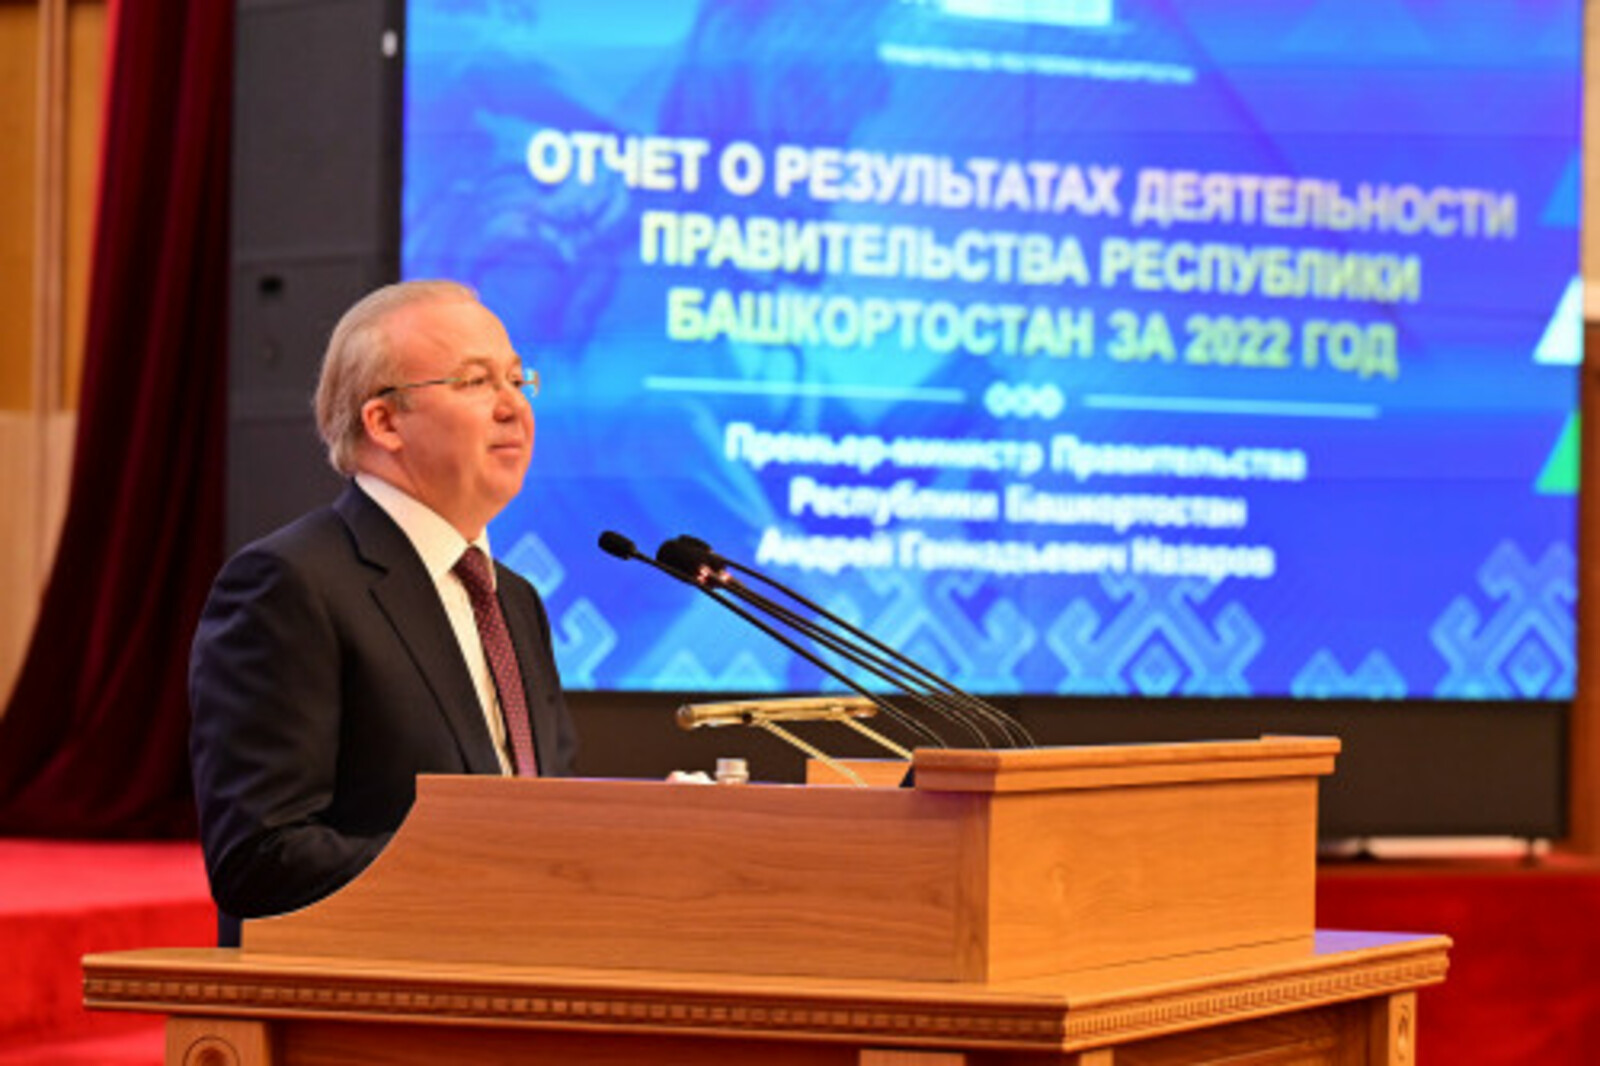 В Башкортостане произвели сельхозпродукции в 2022 году почти на 250 миллиардов рублей